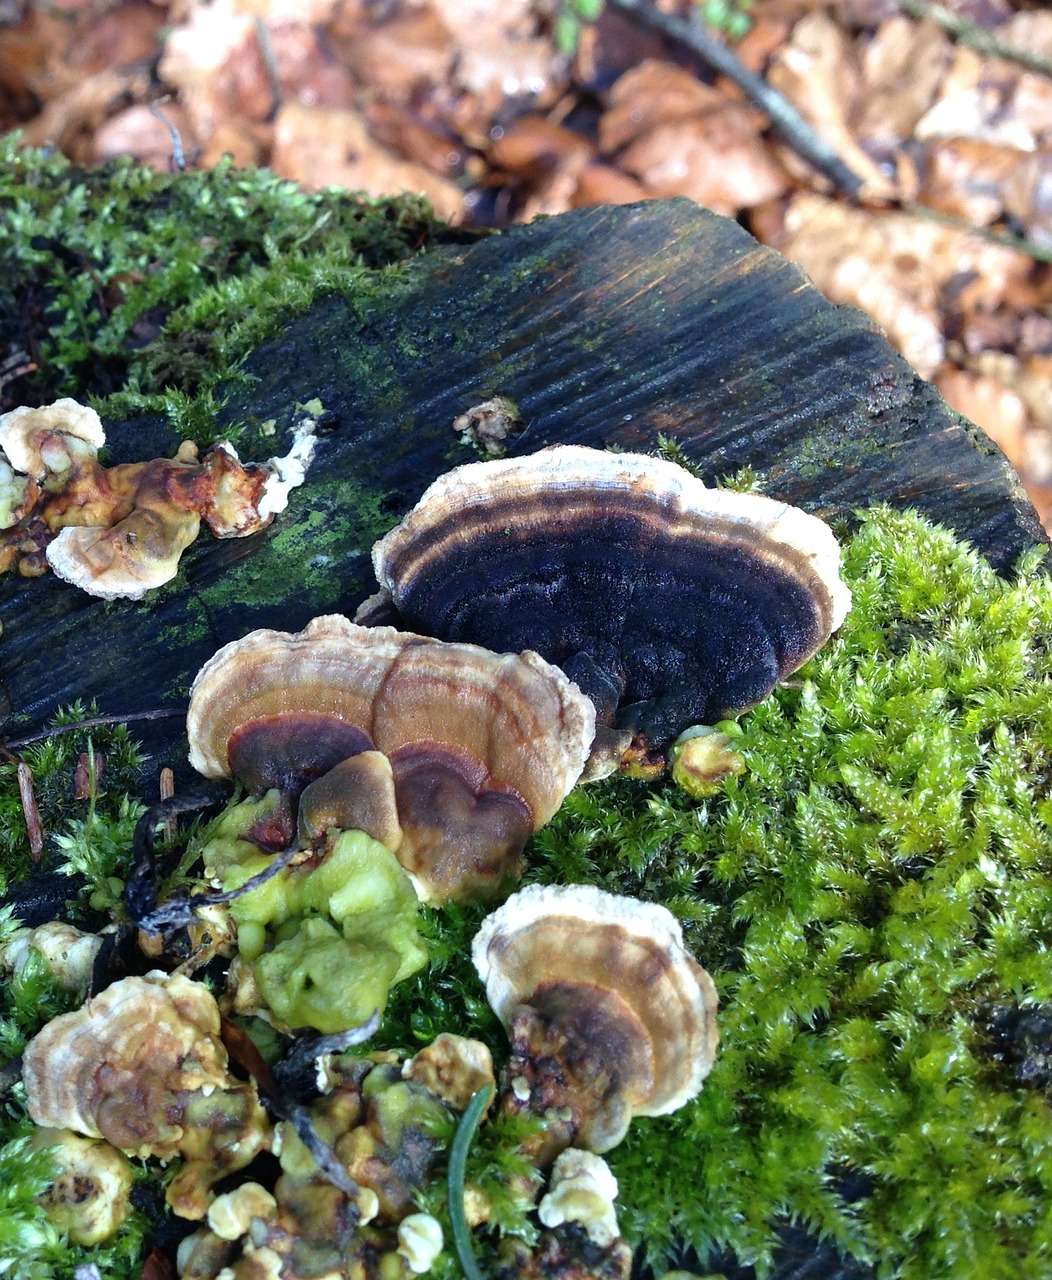 baumschwamm mushroom forest free photo